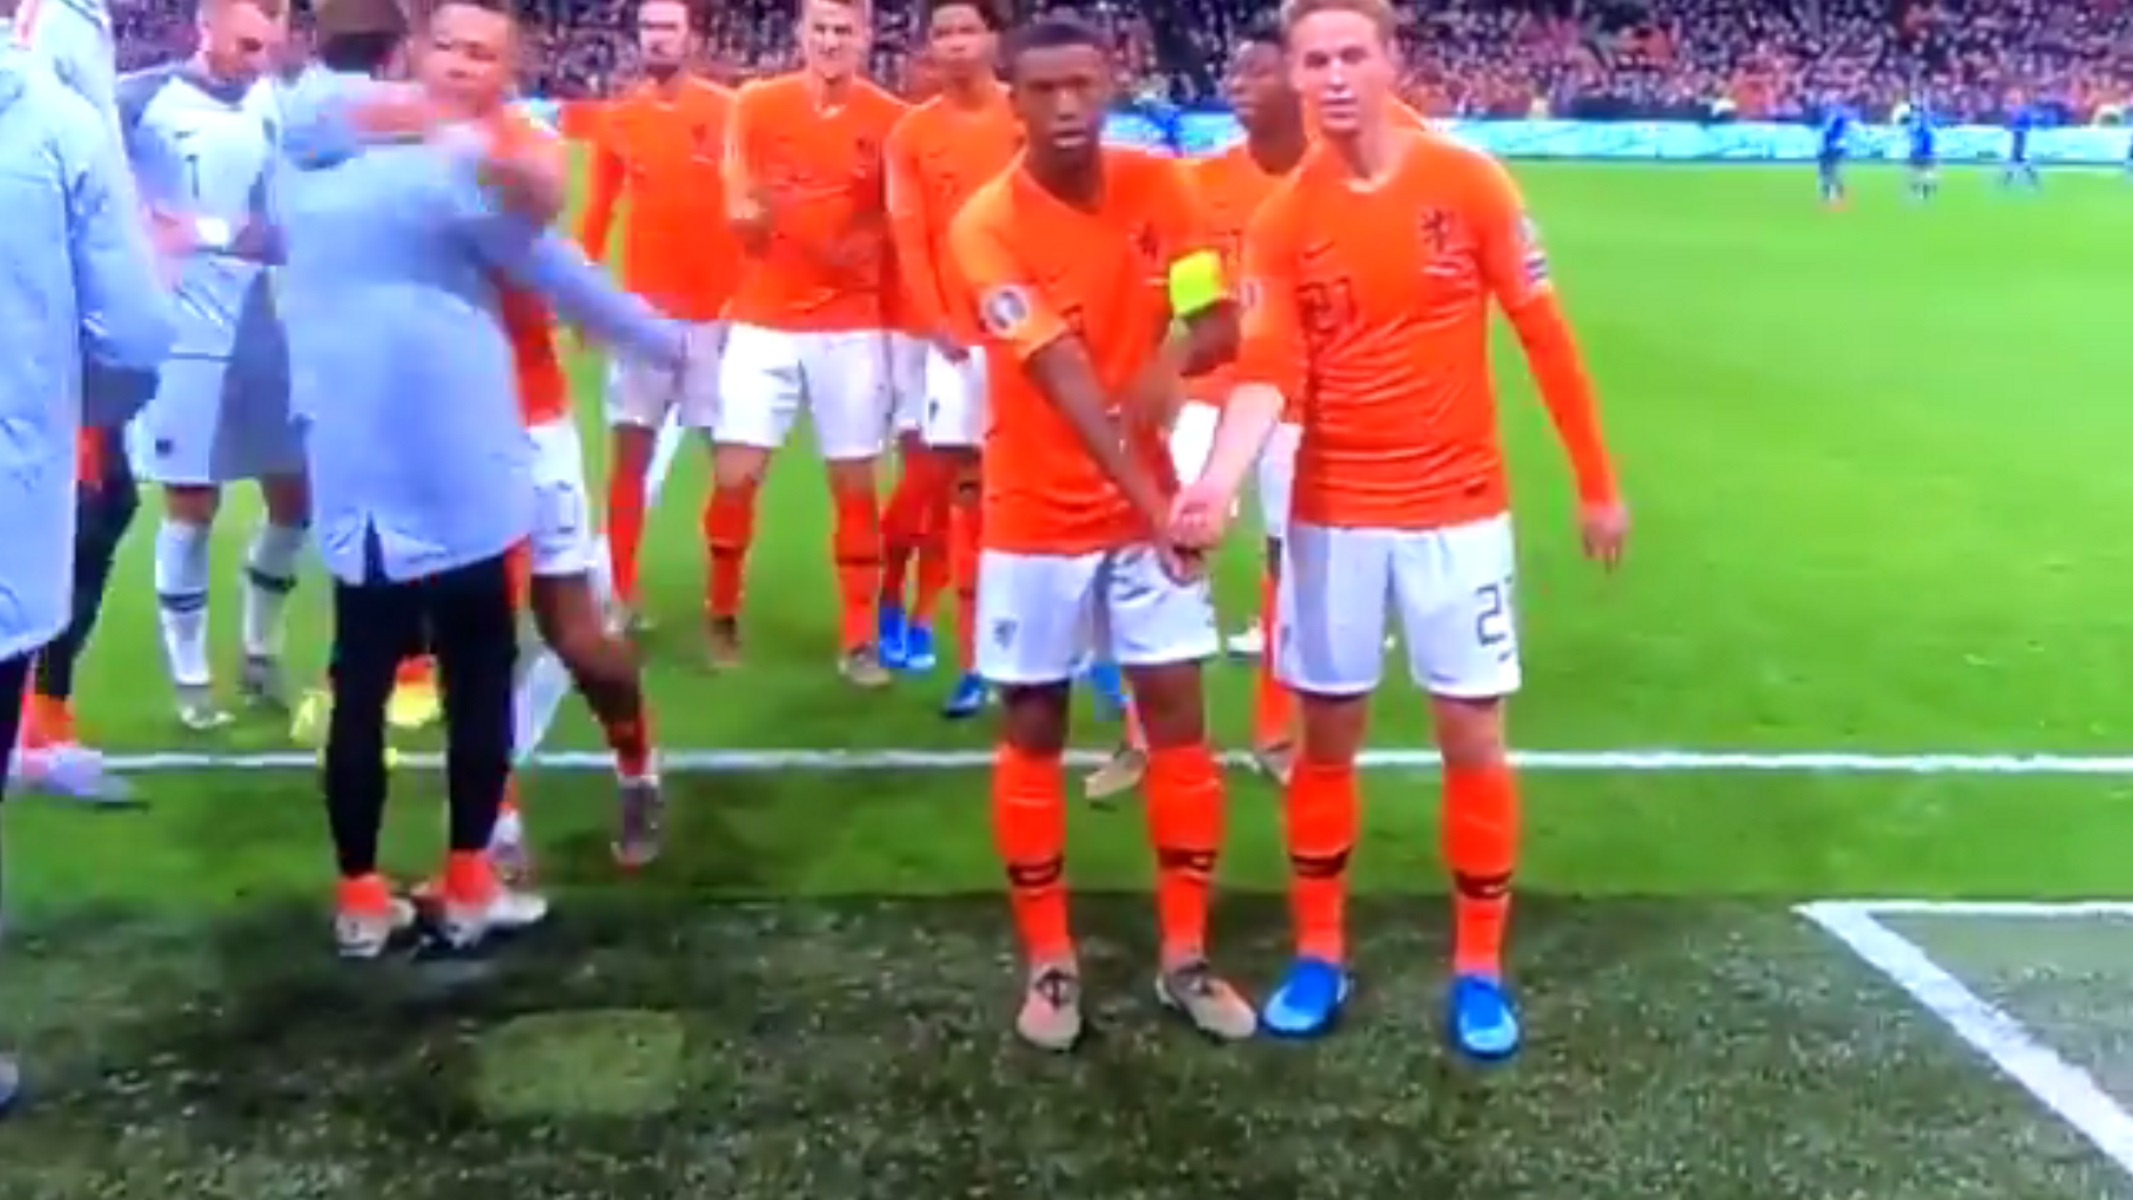 Προκριματικά Euro 2020: Φοβερός πανηγυρισμός ενάντια στο ρατσισμό από την Ολλανδία! video